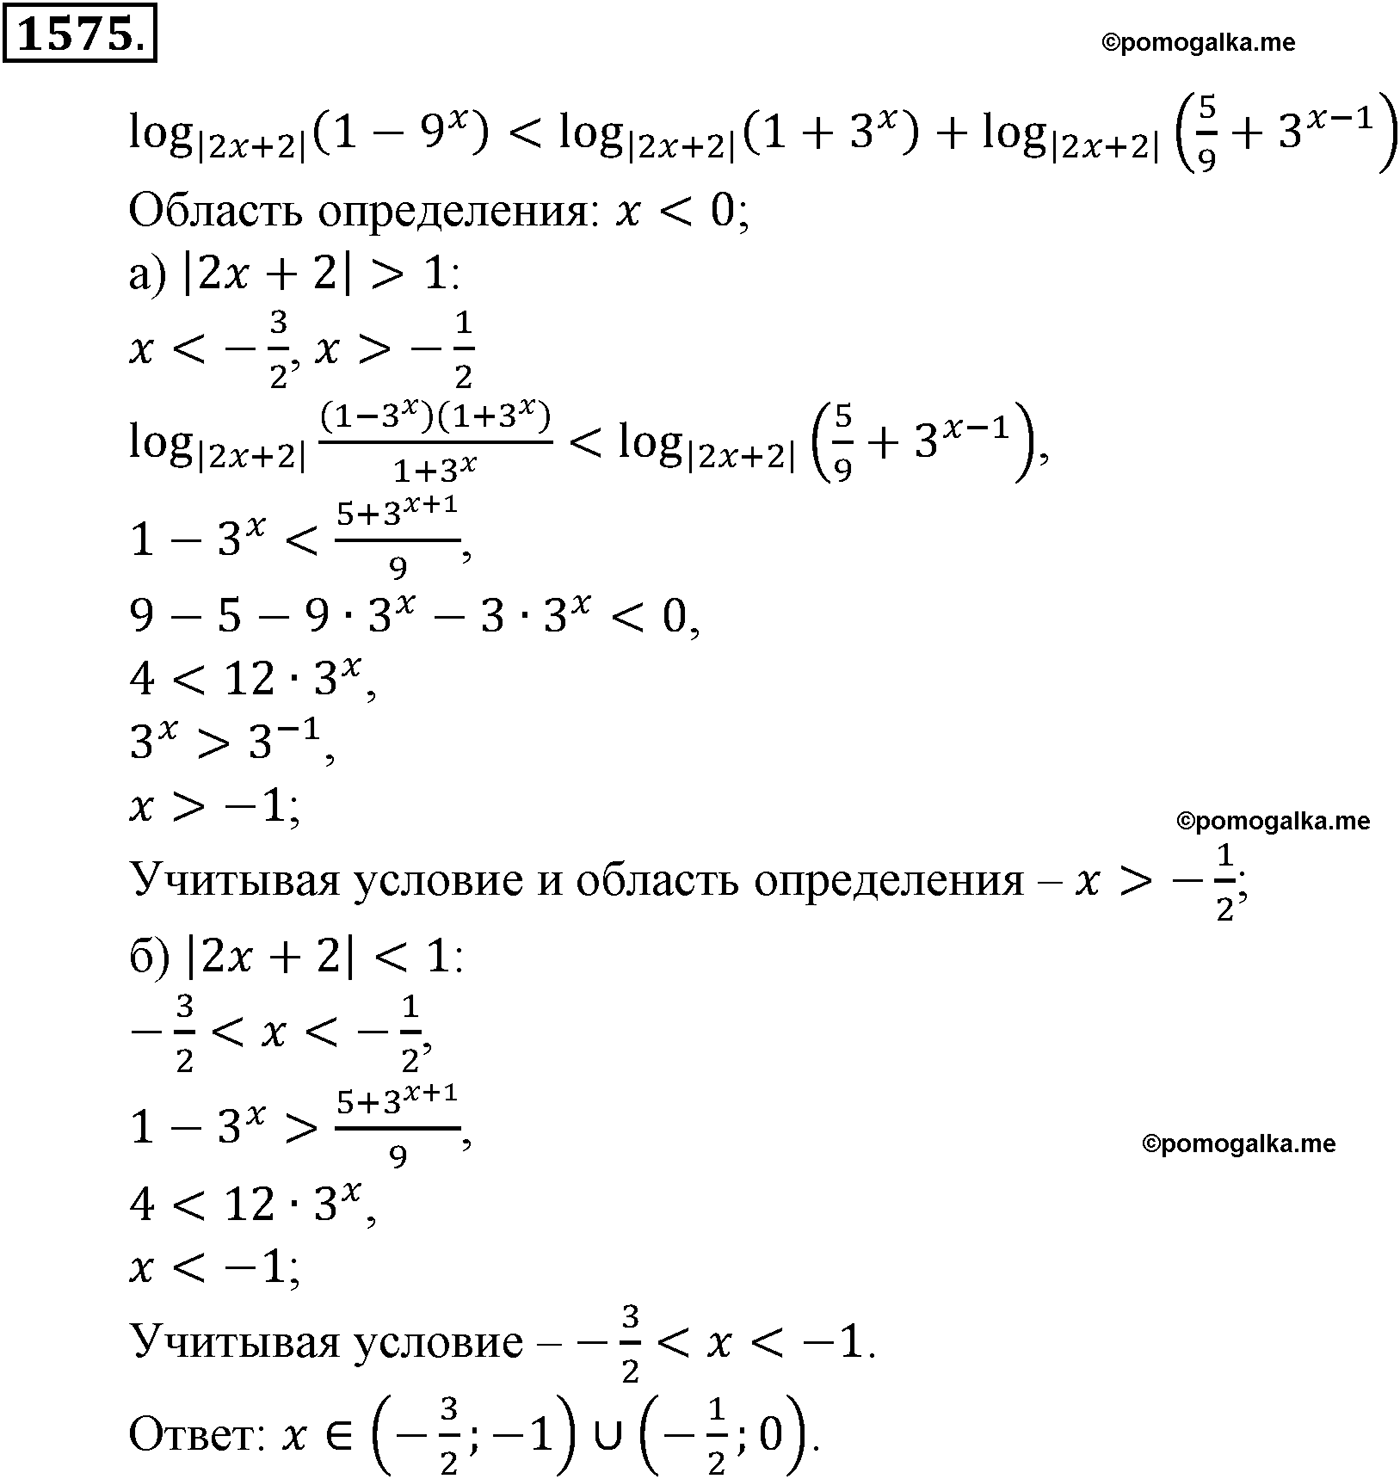 разбор задачи №1575 по алгебре за 10-11 класс из учебника Алимова, Колягина